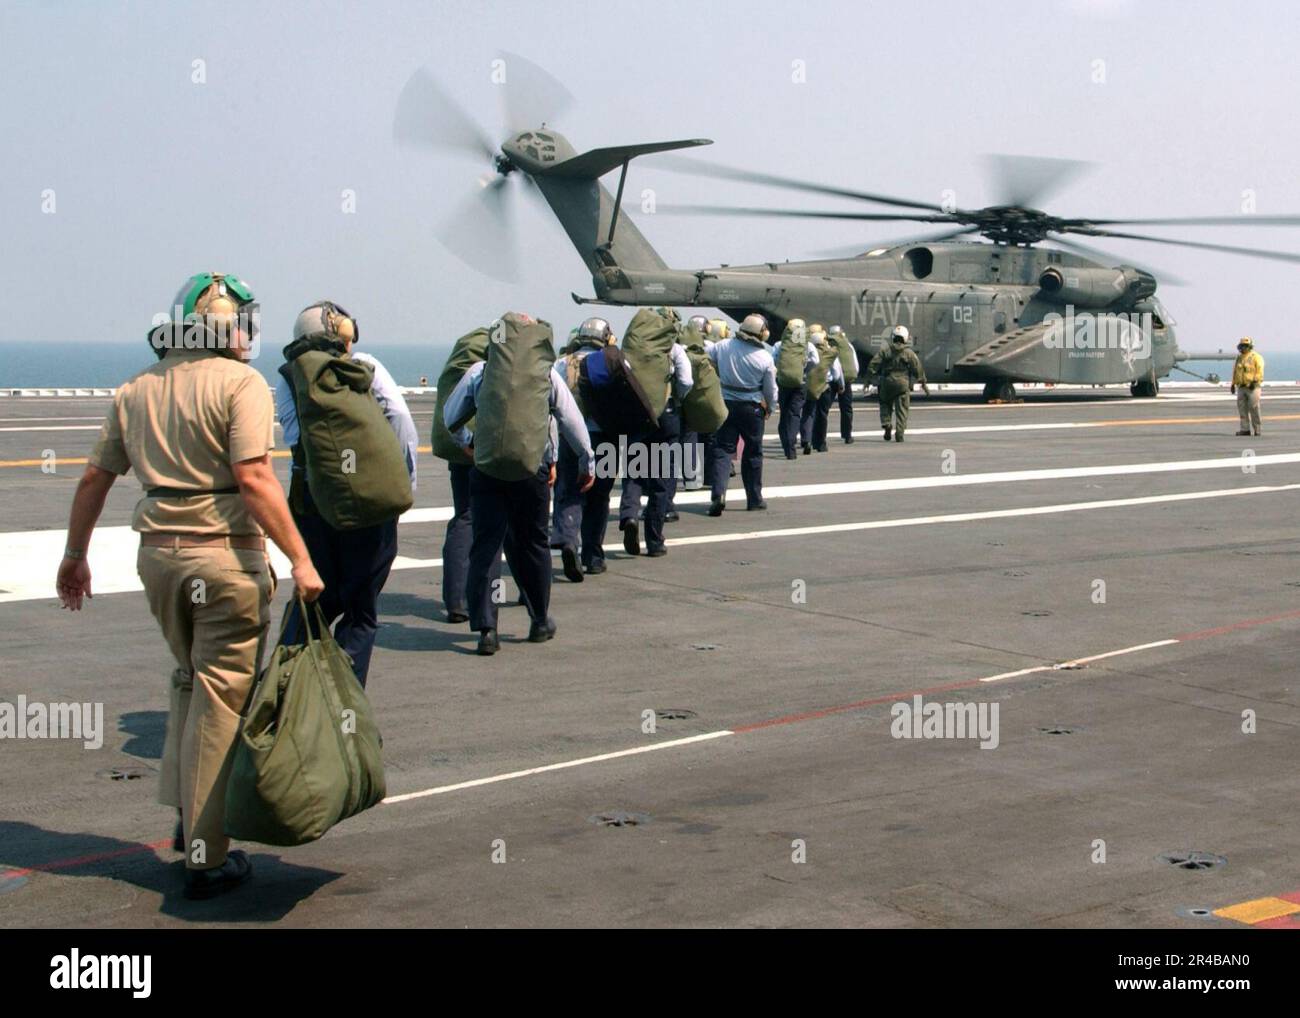 US Navy, Ein US-Team Navy Aviation Boatswain's Kumpels gehen entlang des Flugdecks des Flugzeugträgers USS Harry S. Truman der Nimitz-Klasse (CVN 75) zu einem MH-53 Sea Dragon Hubschrauber, während sie sich auf den Ascheflug vorbereiten. Stockfoto